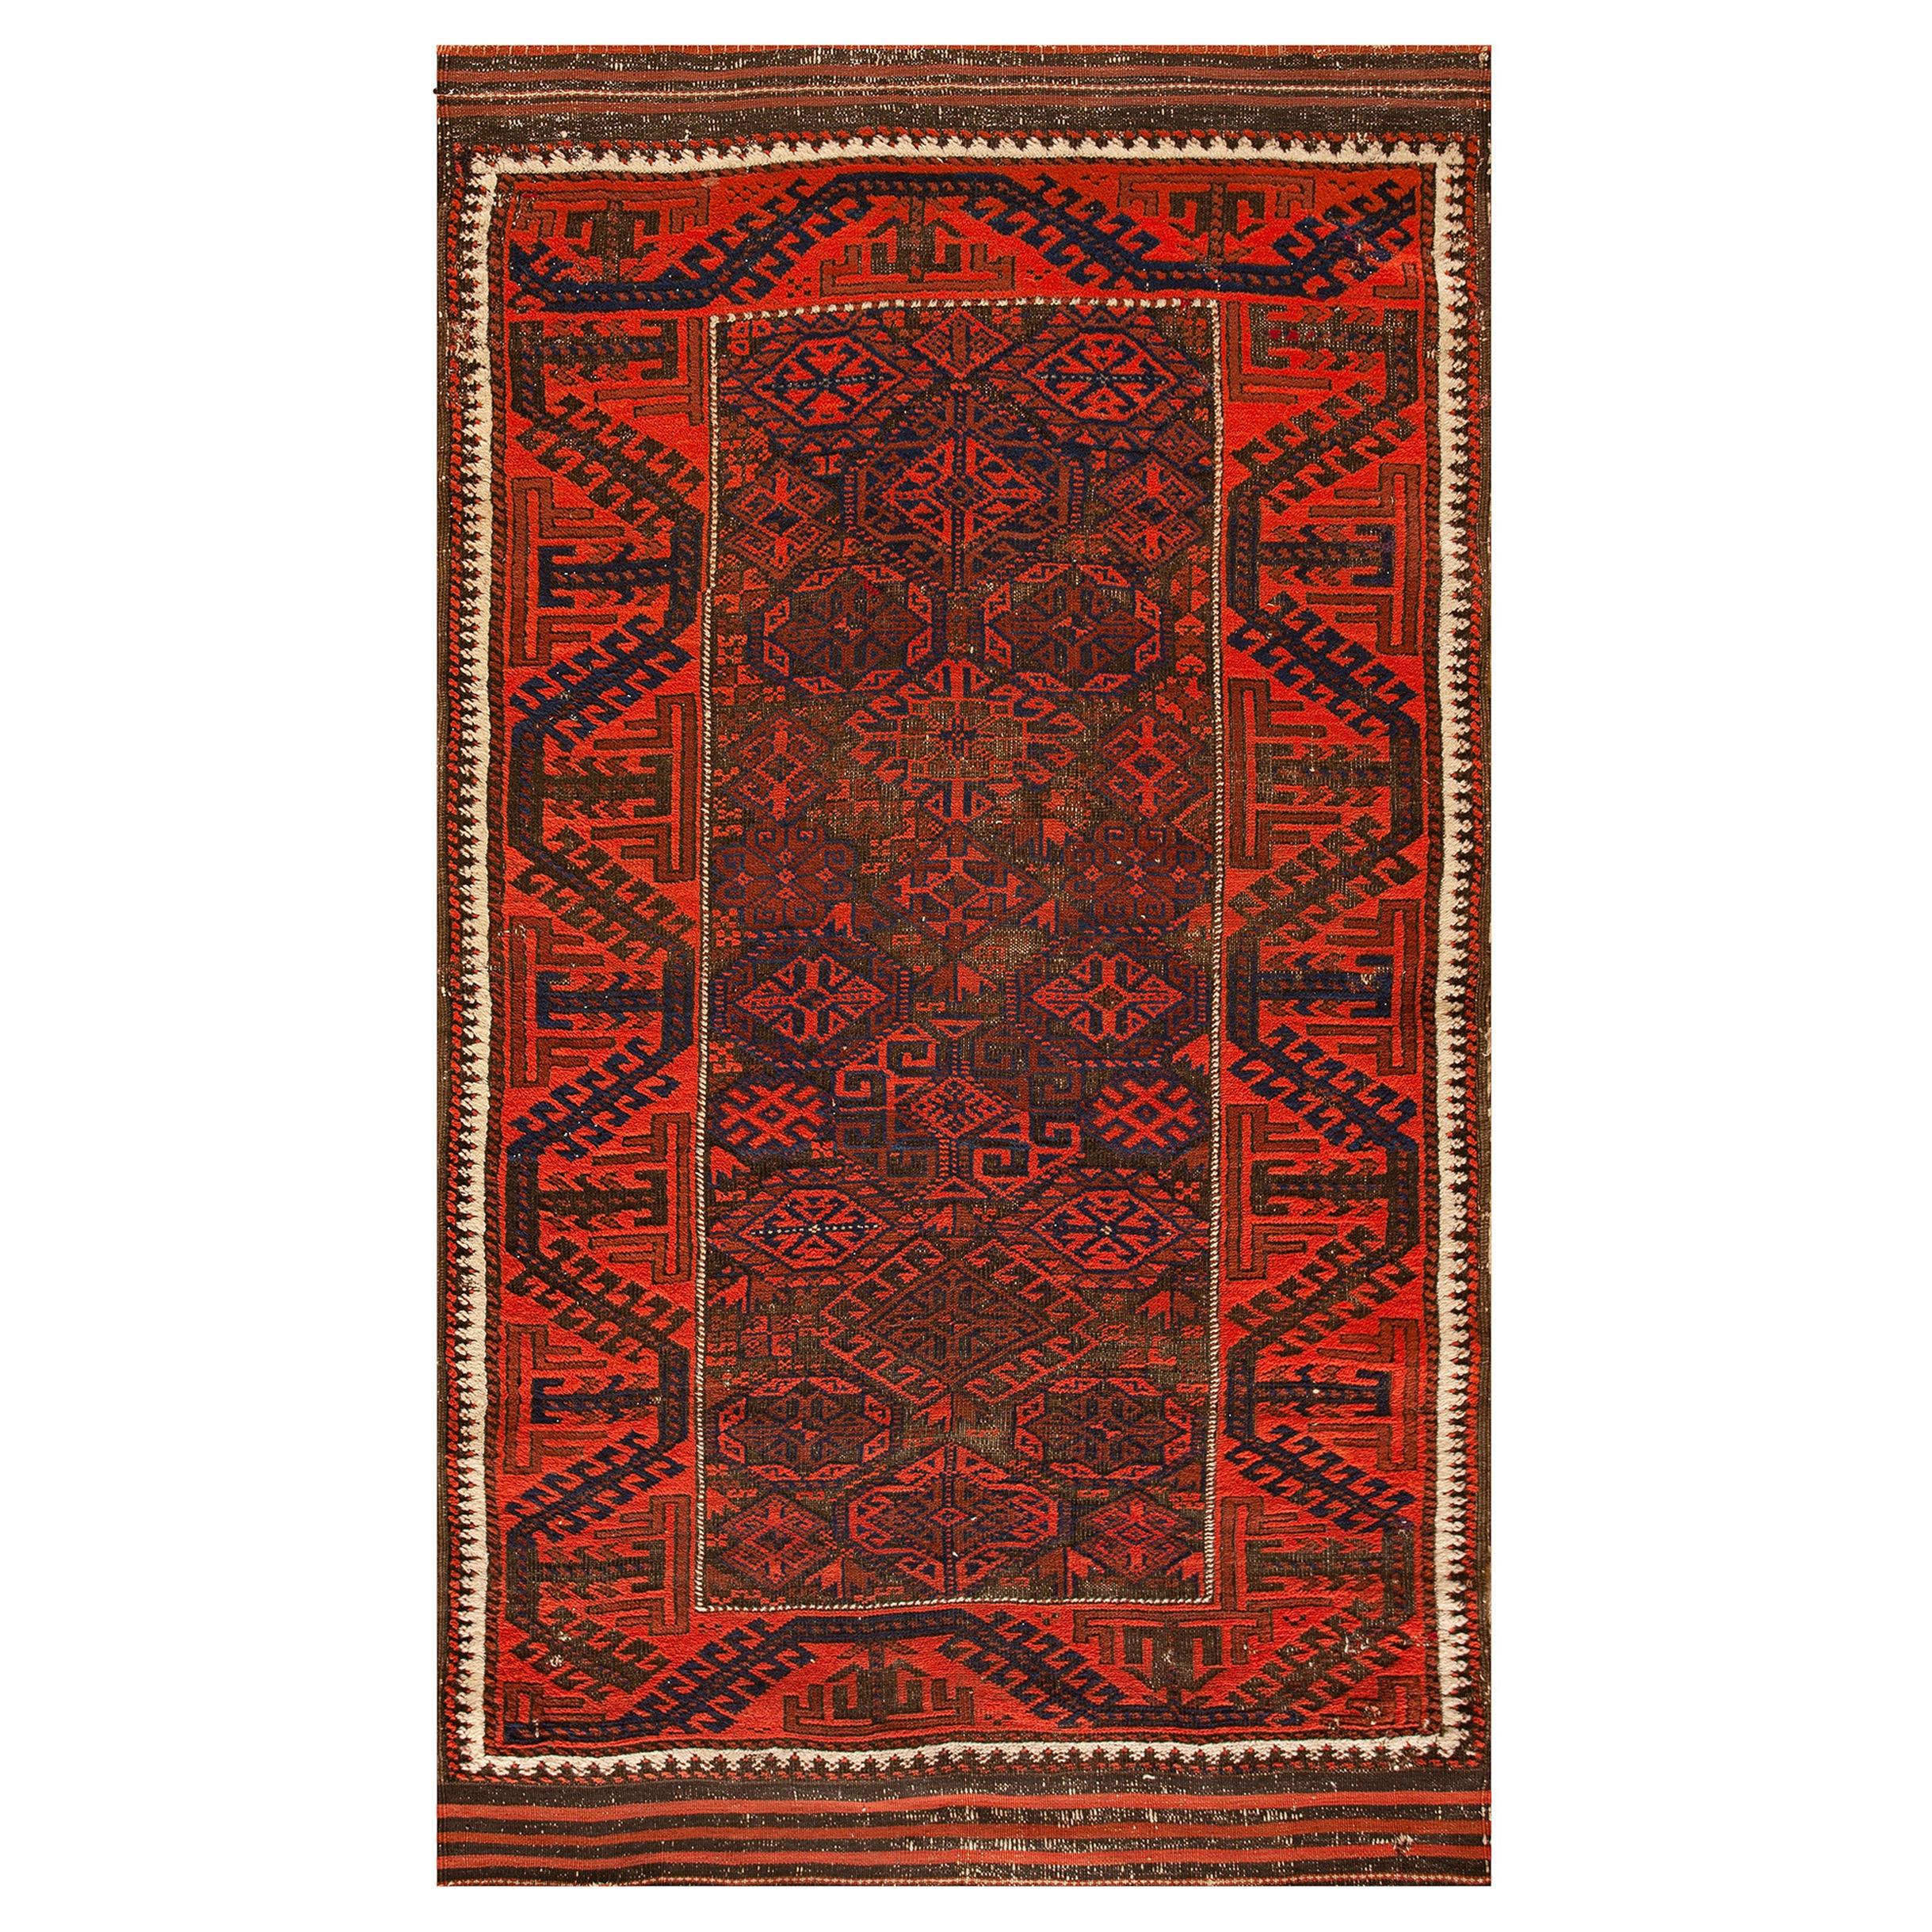 Antique Persian Baluch-Turkmen Rug 3' 1" x 5' 8" 